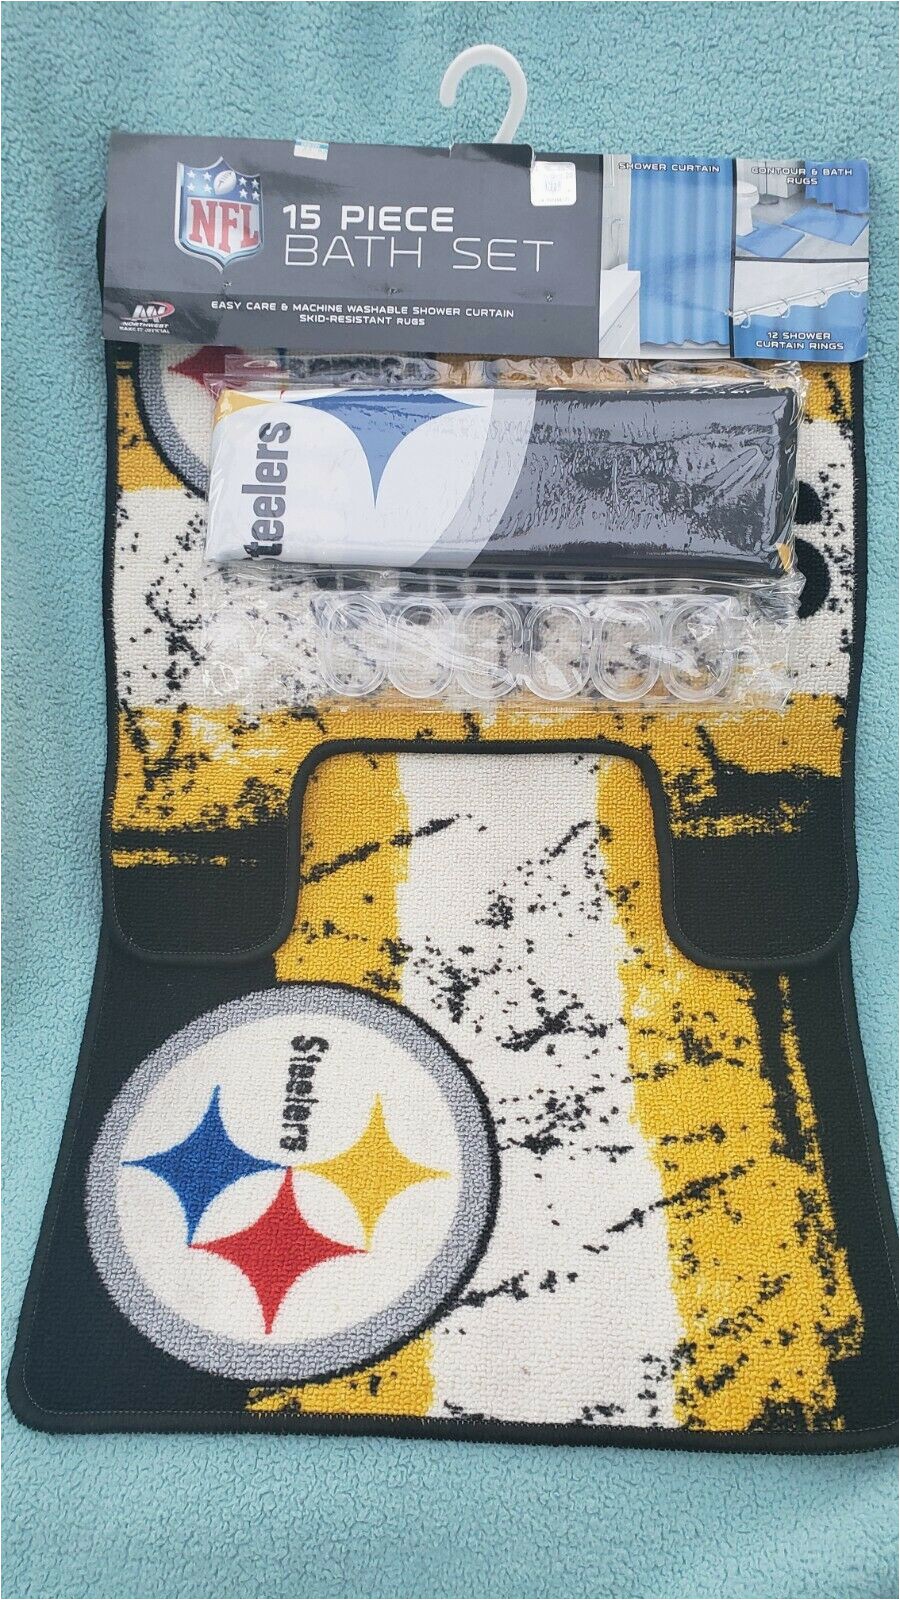 Pittsburgh Steelers Bathroom Rugs Pittsburgh Steelers northwest Nfl 15 Piece Bath Set